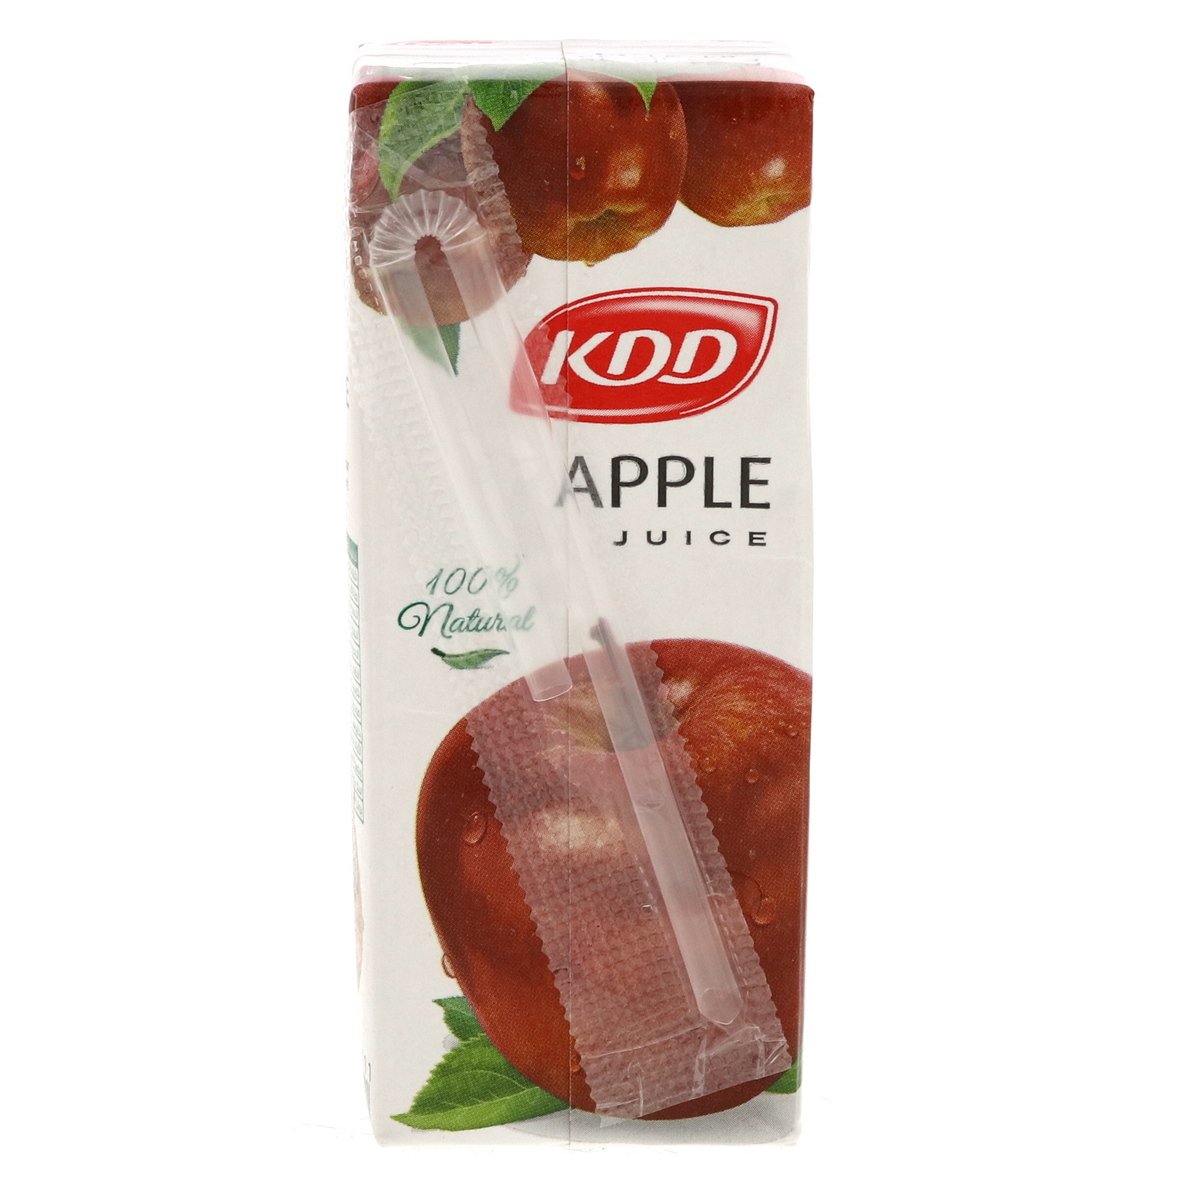 KDD Apple Juice 6 x 180 ml